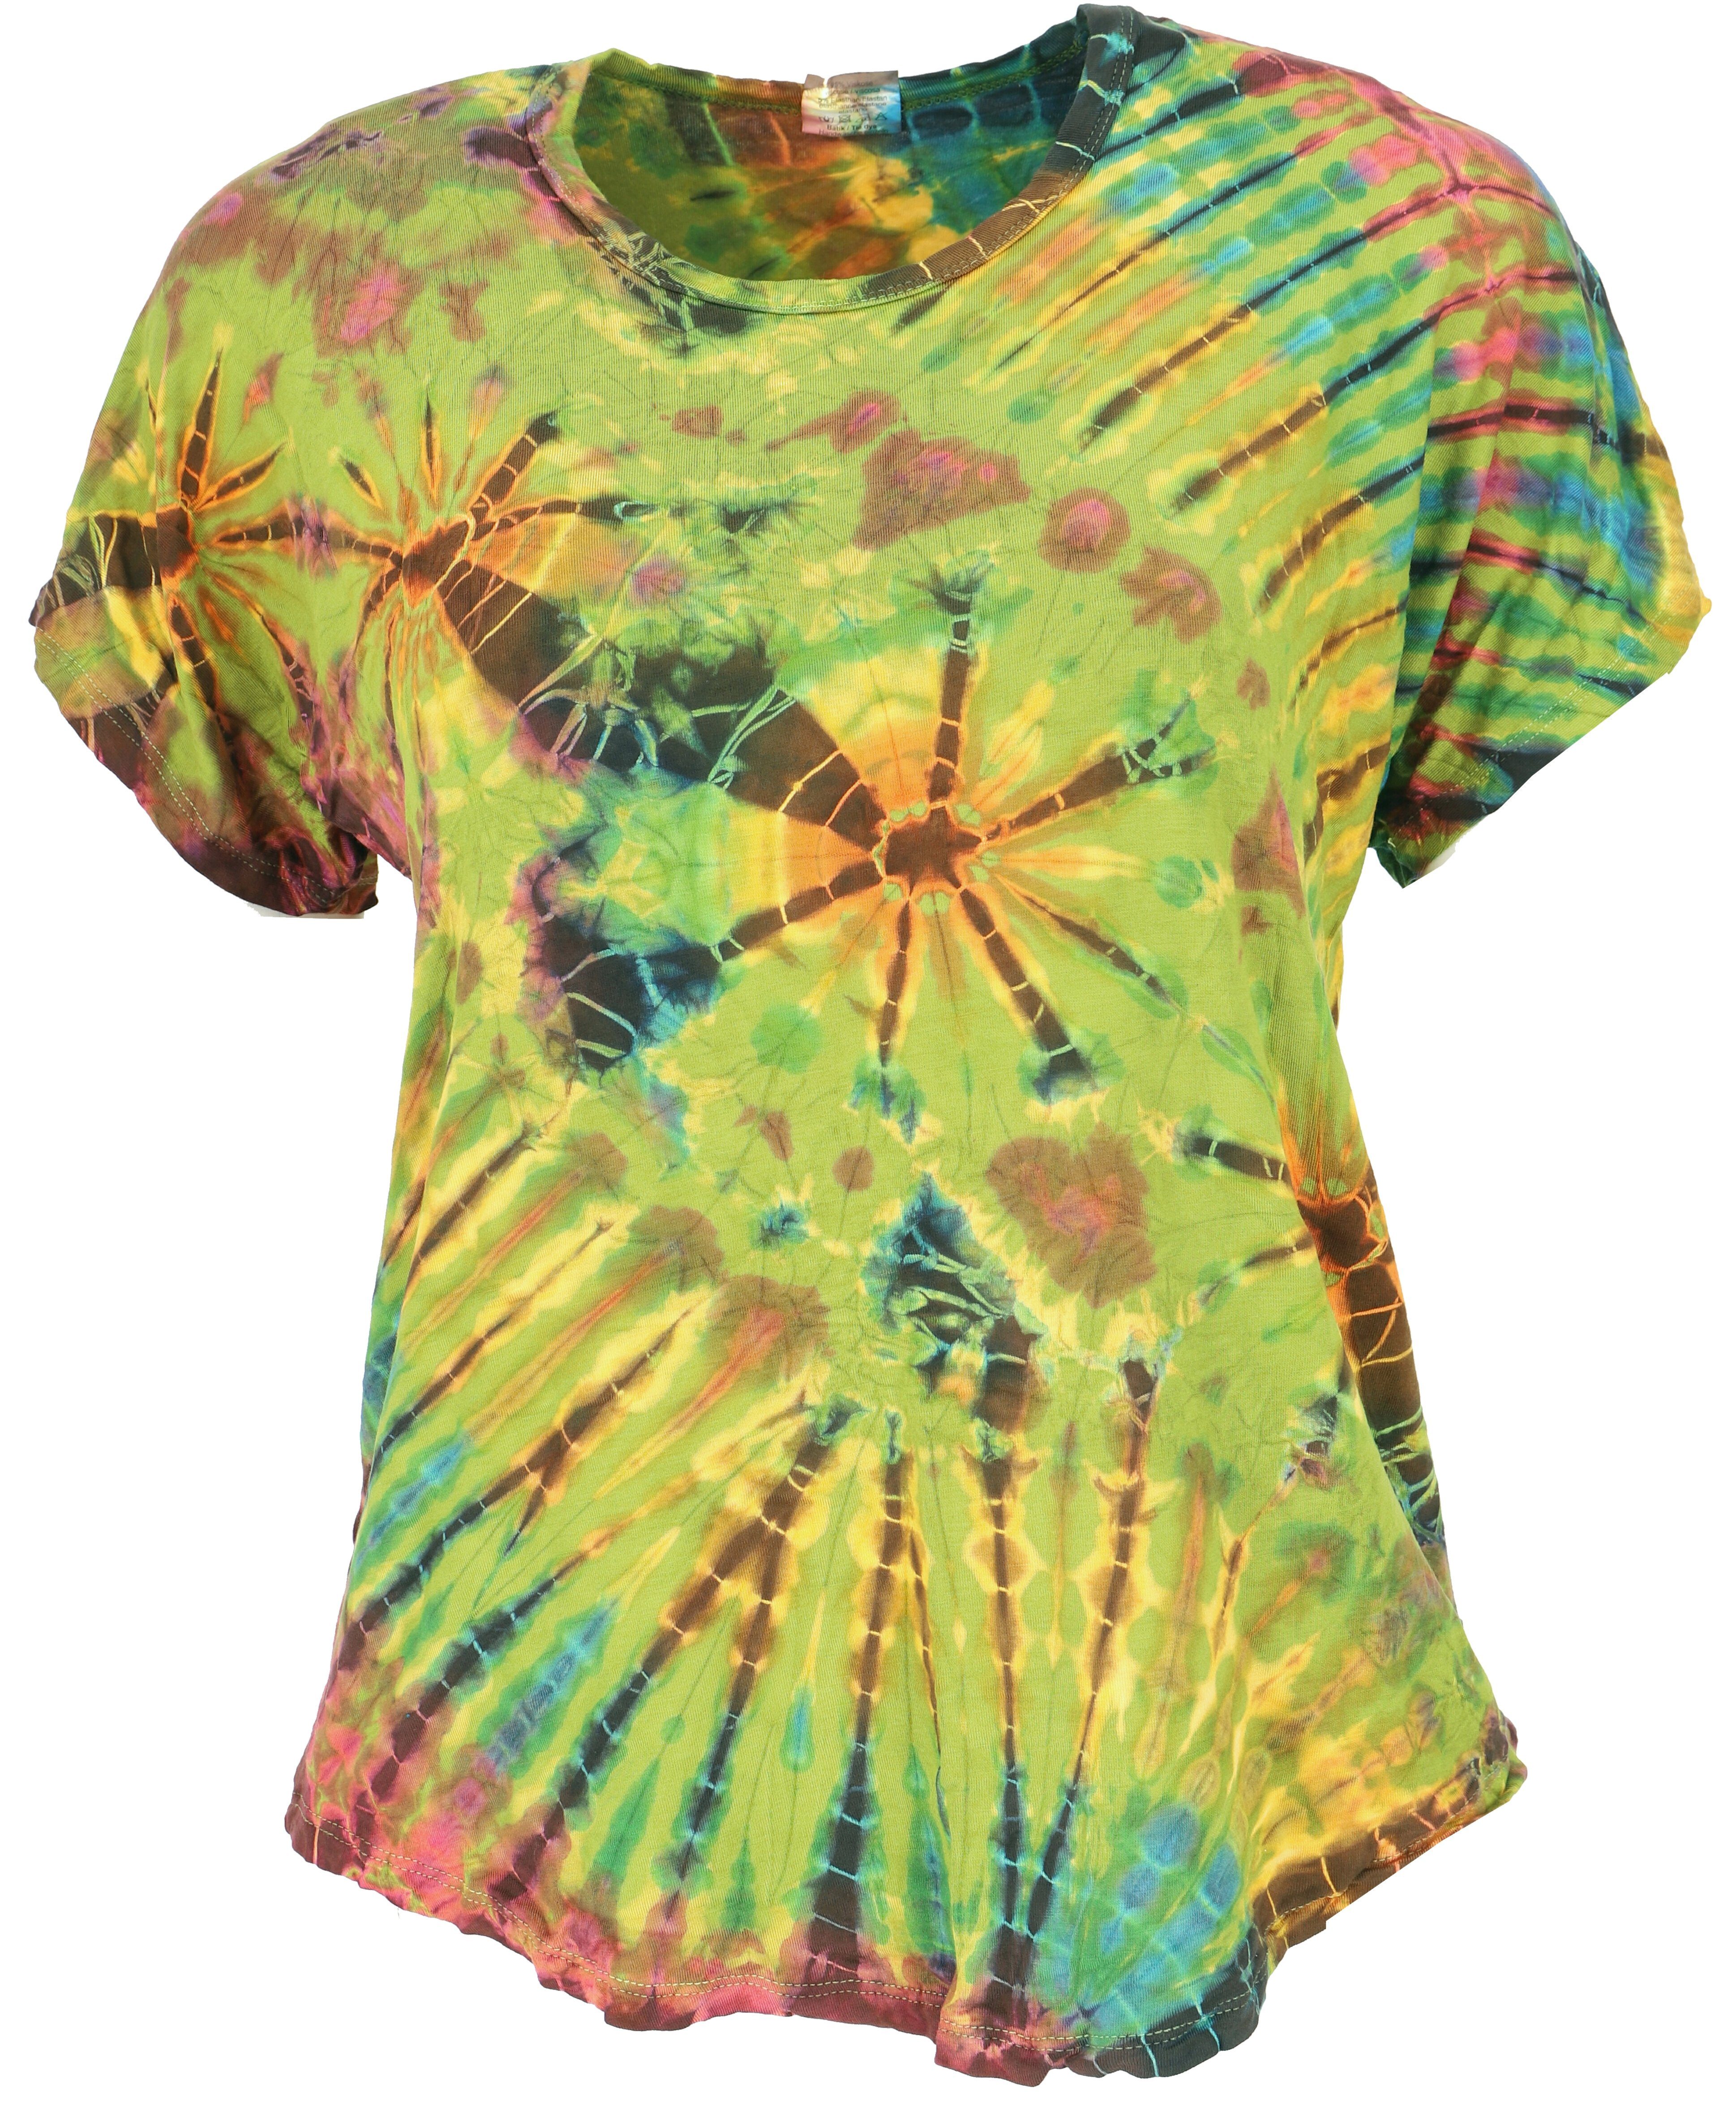 Guru-Shop T-Shirt Batik T-Shirt, Tie Dye Блузкиtop - lemon Festival, Ethno Style, Hippie, alternative Одежда